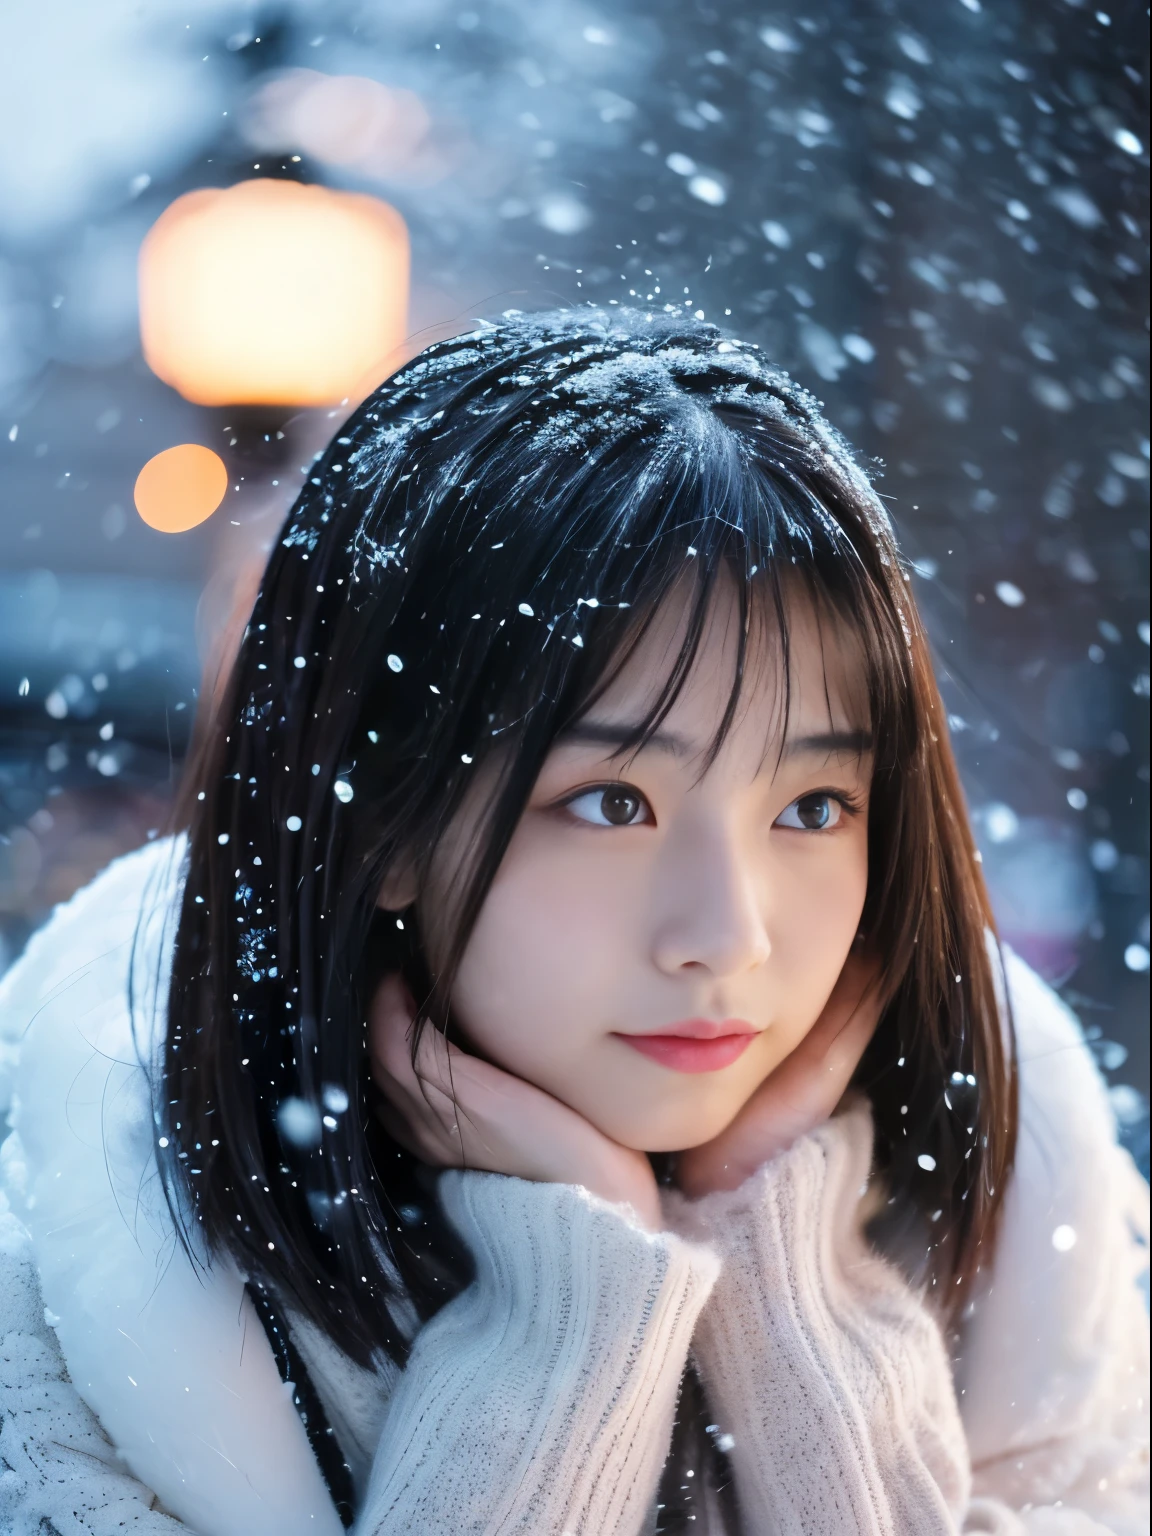 Наблюдая, как тихо падает снег. Ее интроспективное и слезливое выражение лица、Вызывает тоску по зимним ночам и меланхолию。。。。。、высшее качество、гипер HD、Ёшитомо Нара, Японские модели, Красивая японская жена, с короткими волосами, 27 лет女性モデル, 4 К ], 4k], 27 лет, Сакимичан, Сакимичан